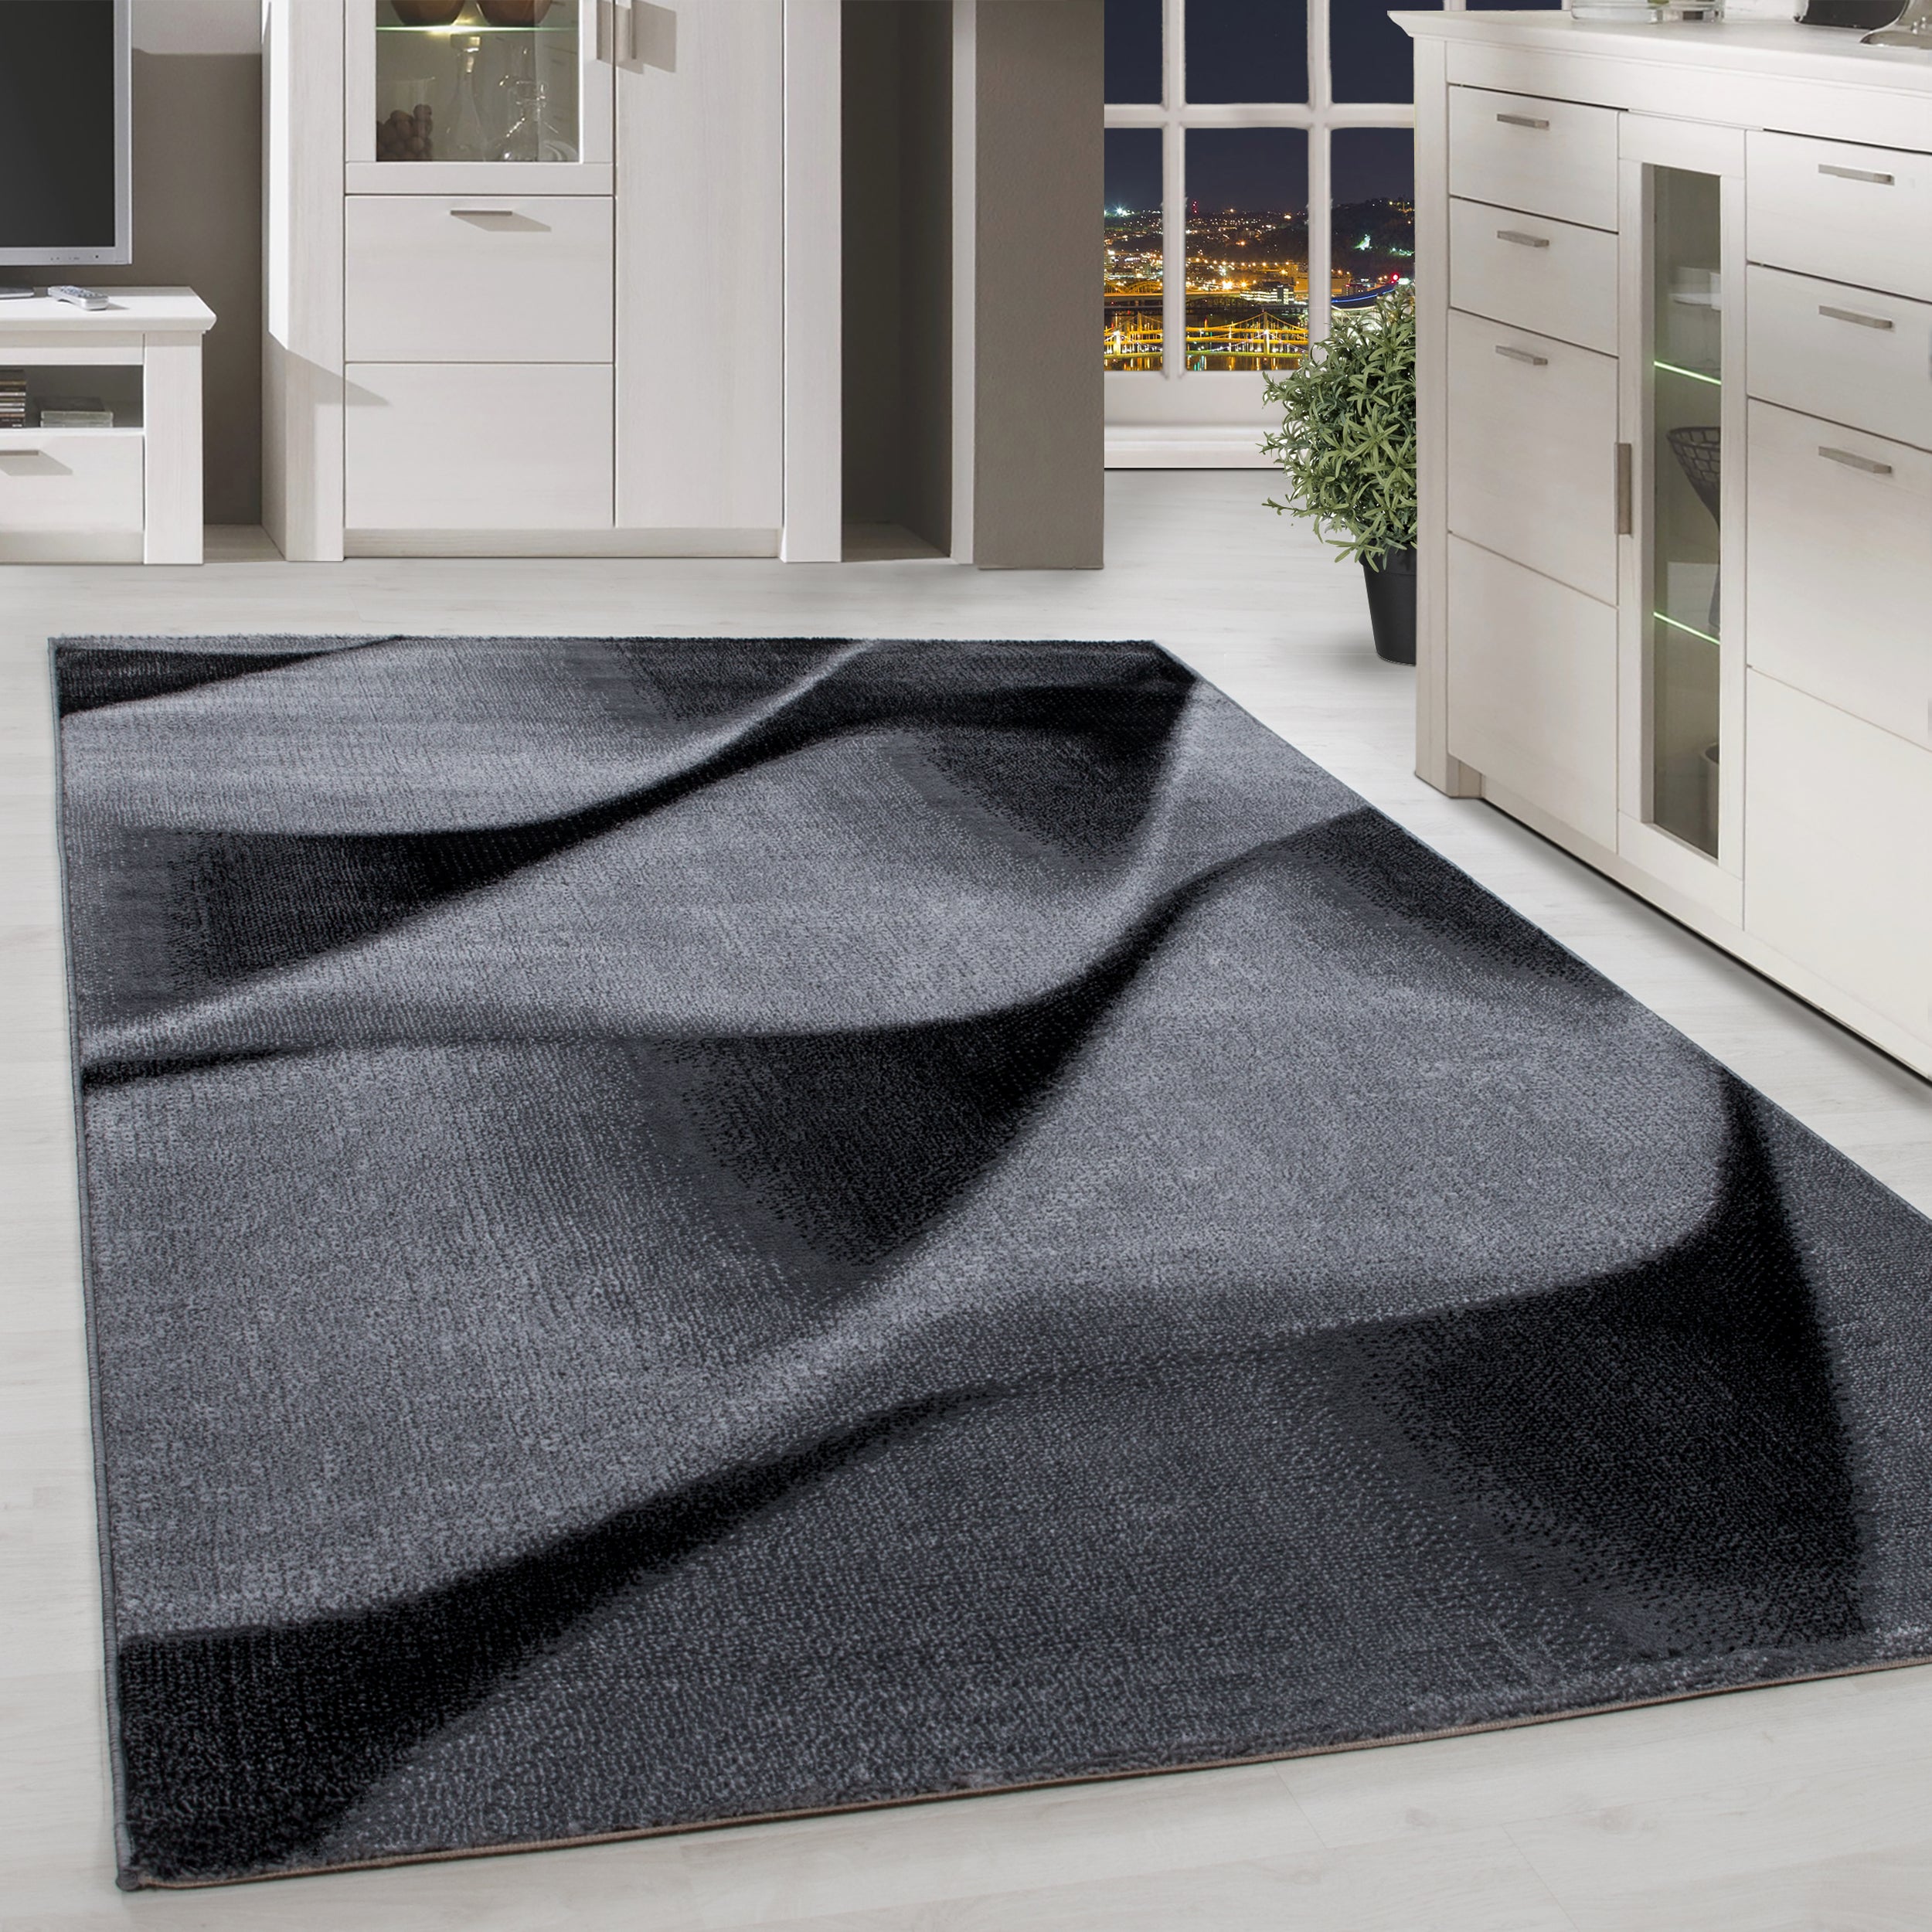 Kurzflor Teppich Wellen Muster Grau Schwarz Meliert Wohnzimmer